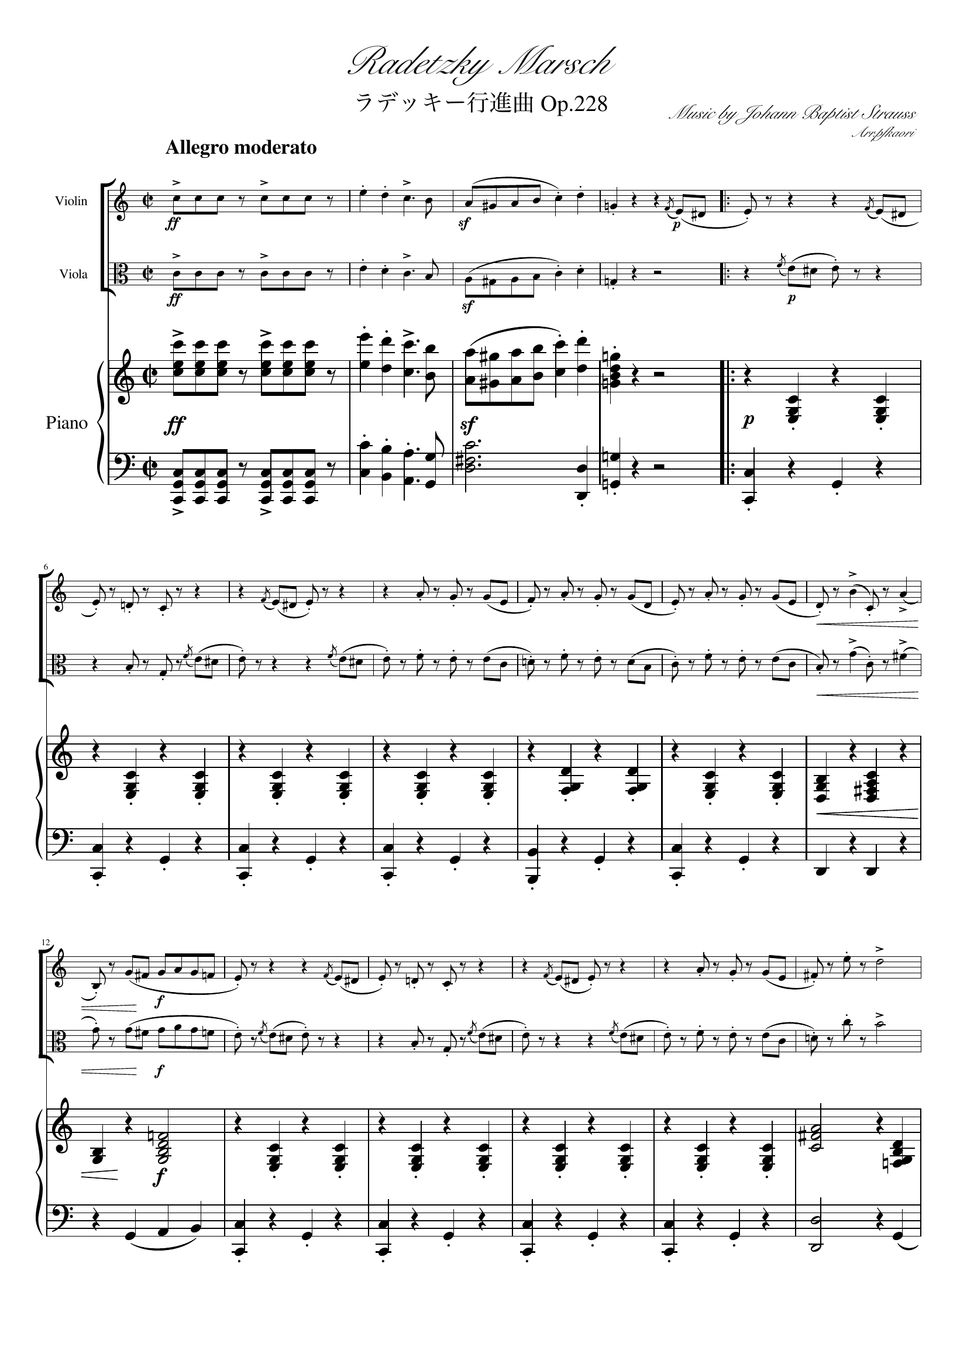 ヨハンシュトラウス1世 - ラデッキー行進曲 (C・ピアノトリオ/ヴァイオリン&ヴィオラ) by pfkaori